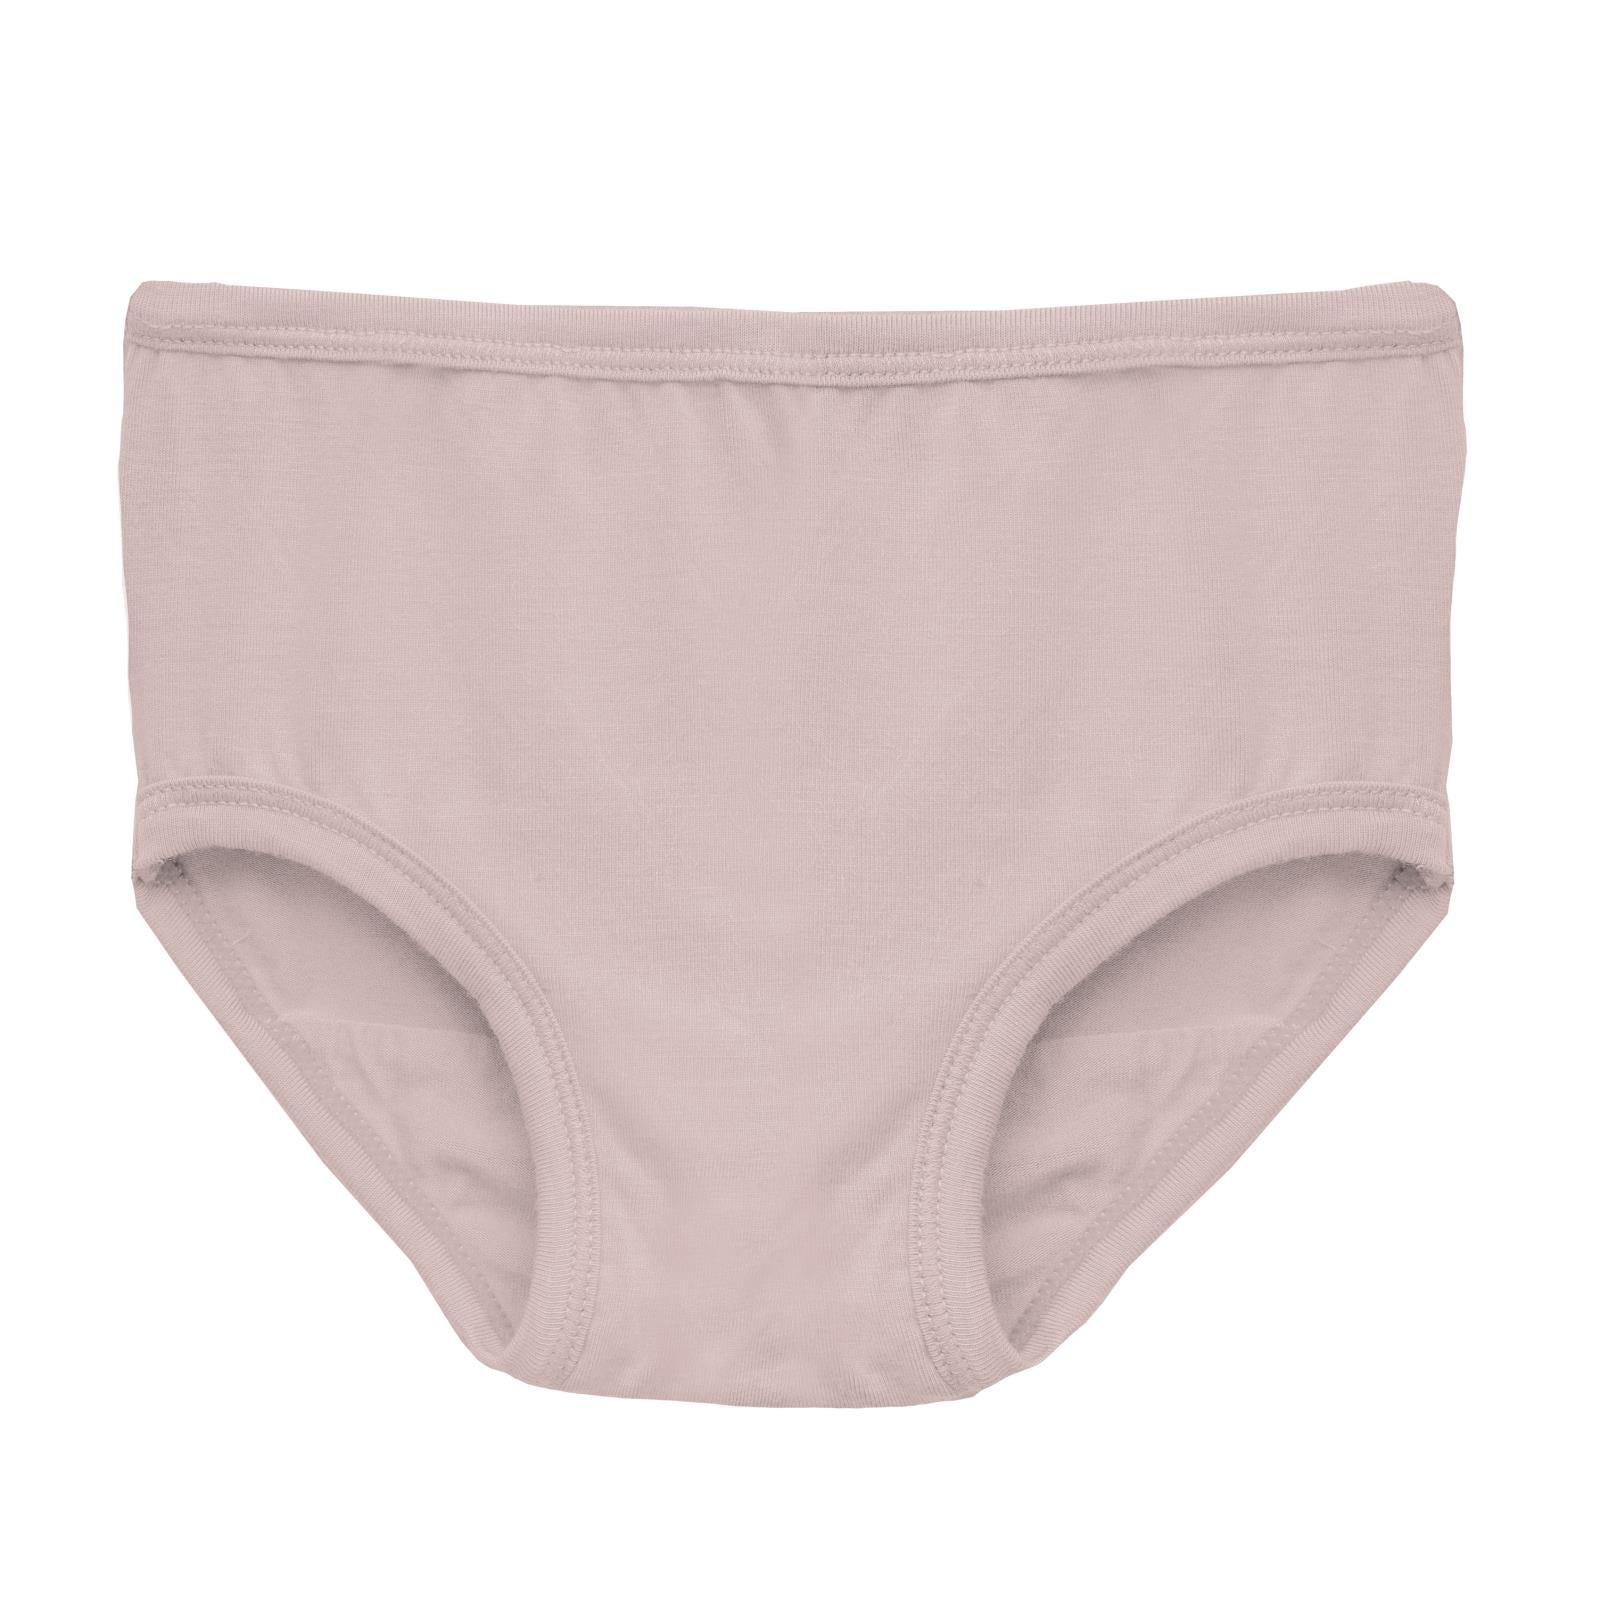 KicKee Pants Dew Crab Types Girls Underwear